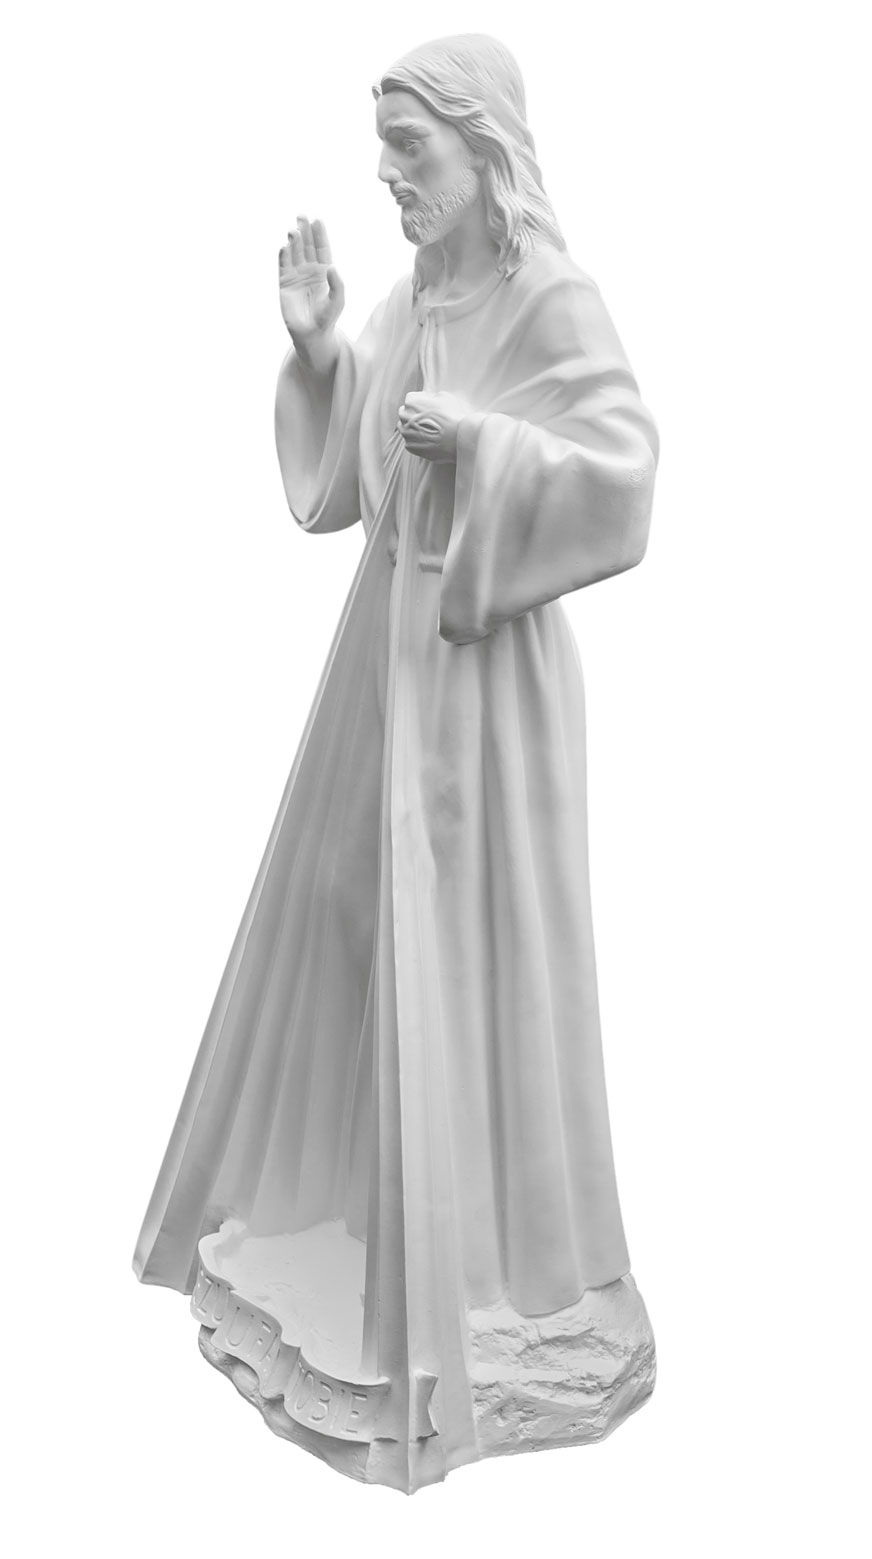 Jezus Miłosierny - Jezu Ufam Tobie - Figura nagrobkowa - 174 cm - R 172